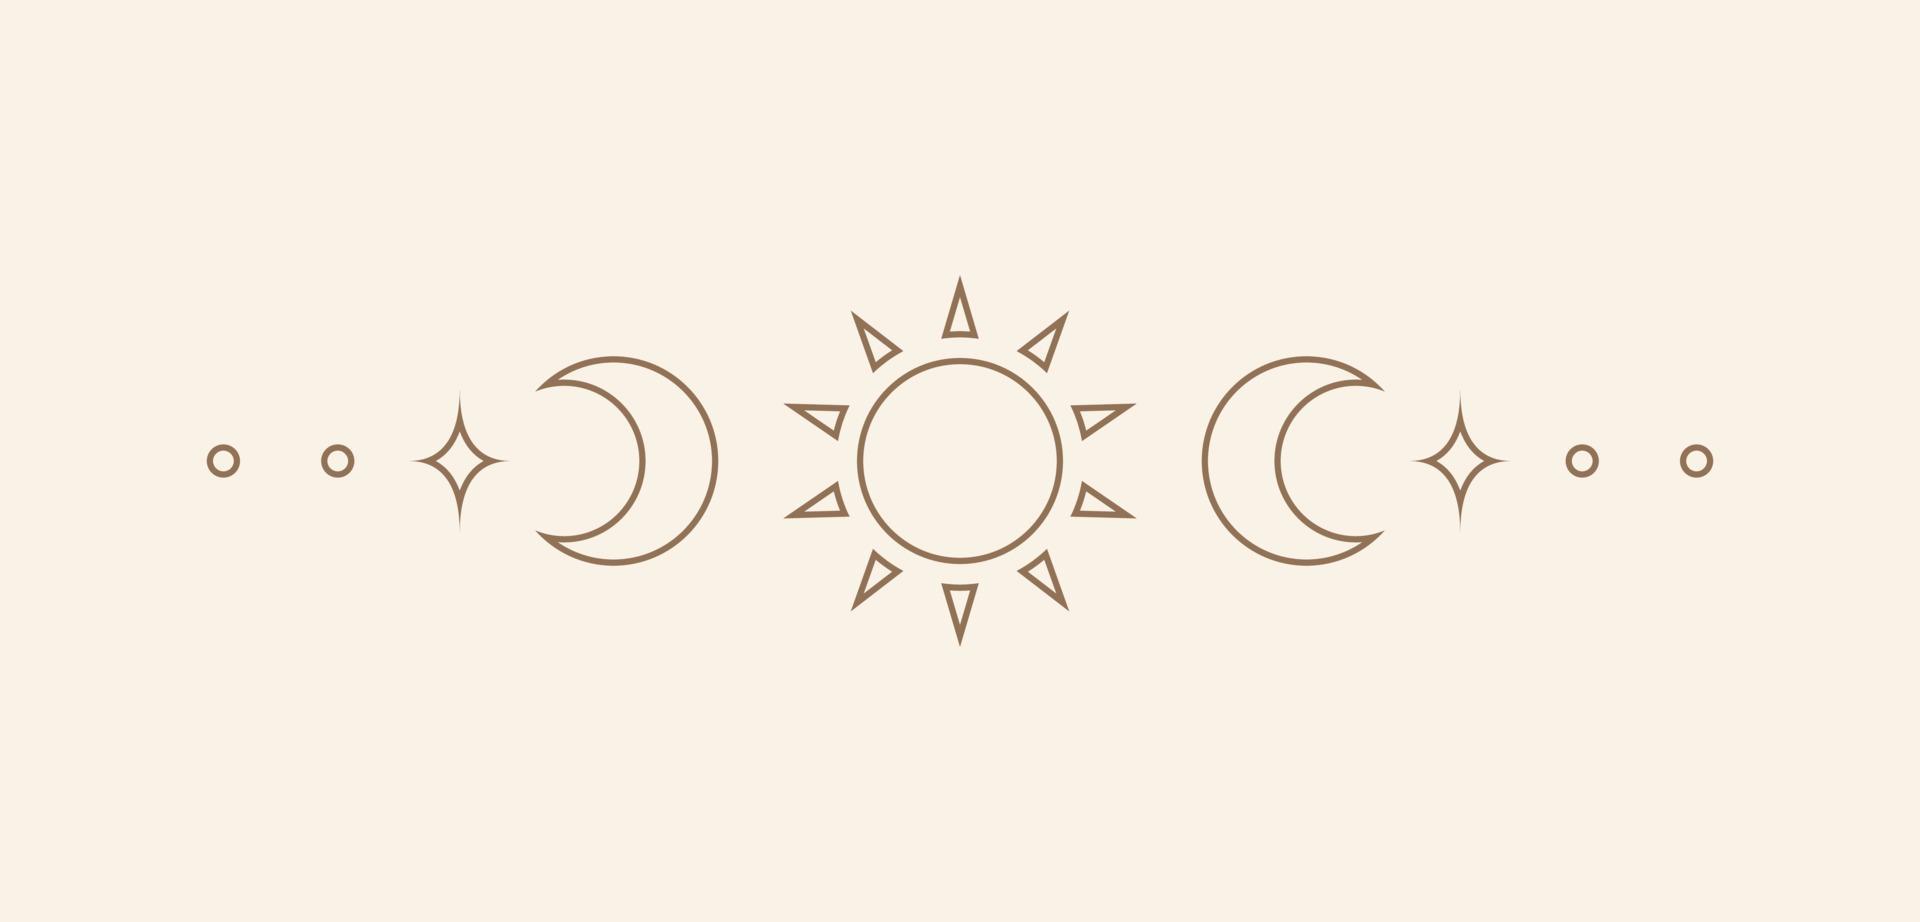 himmlisch Text Teiler mit Sonne, Sterne, Mond Phasen, Halbmonde. aufwendig Boho Mystiker Separator dekorativ Element vektor